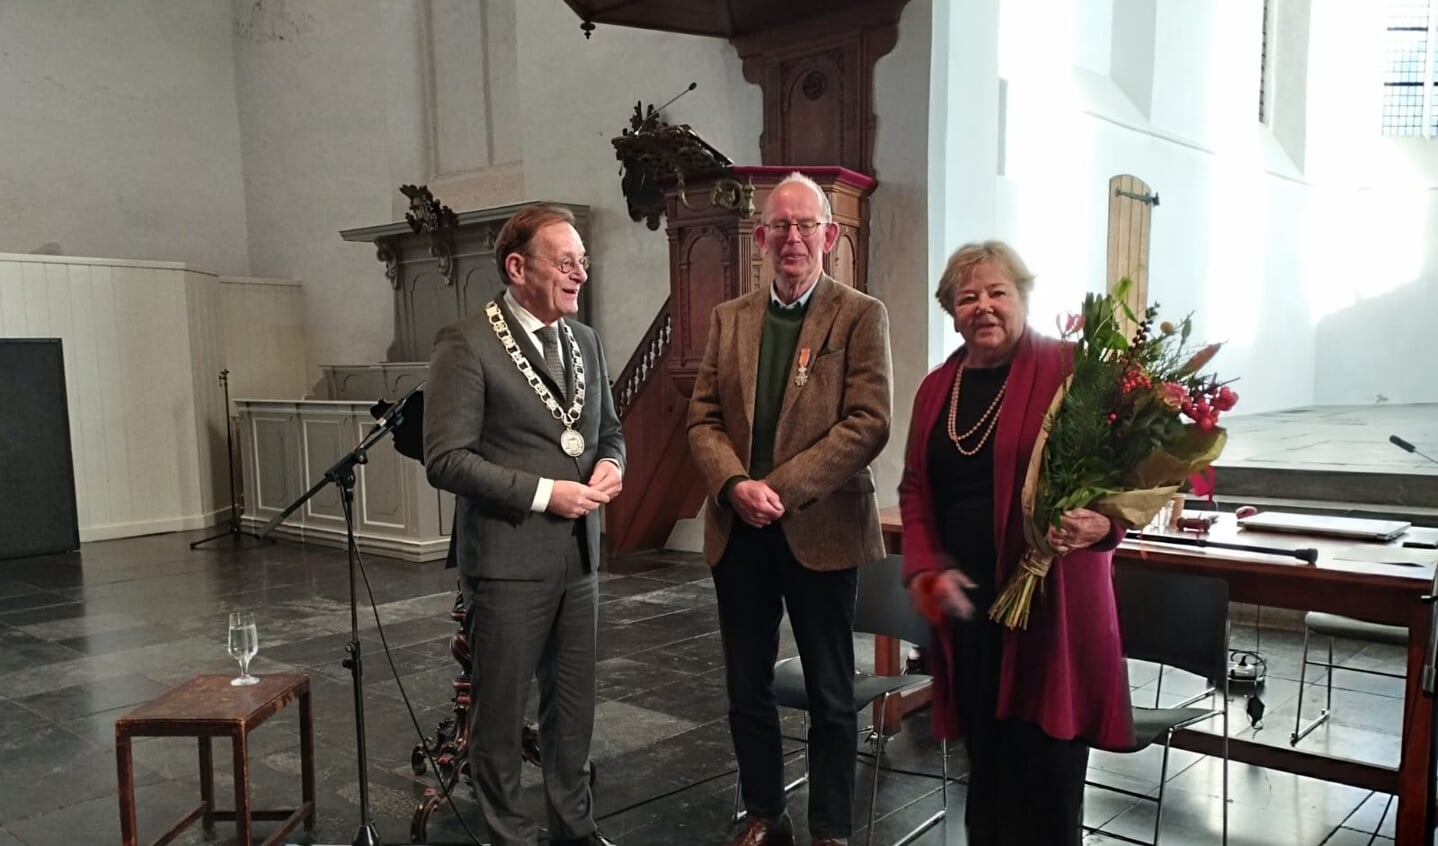 Burgemeester Janssen verraste Wim Edelman met een koninklijke onderscheiding.